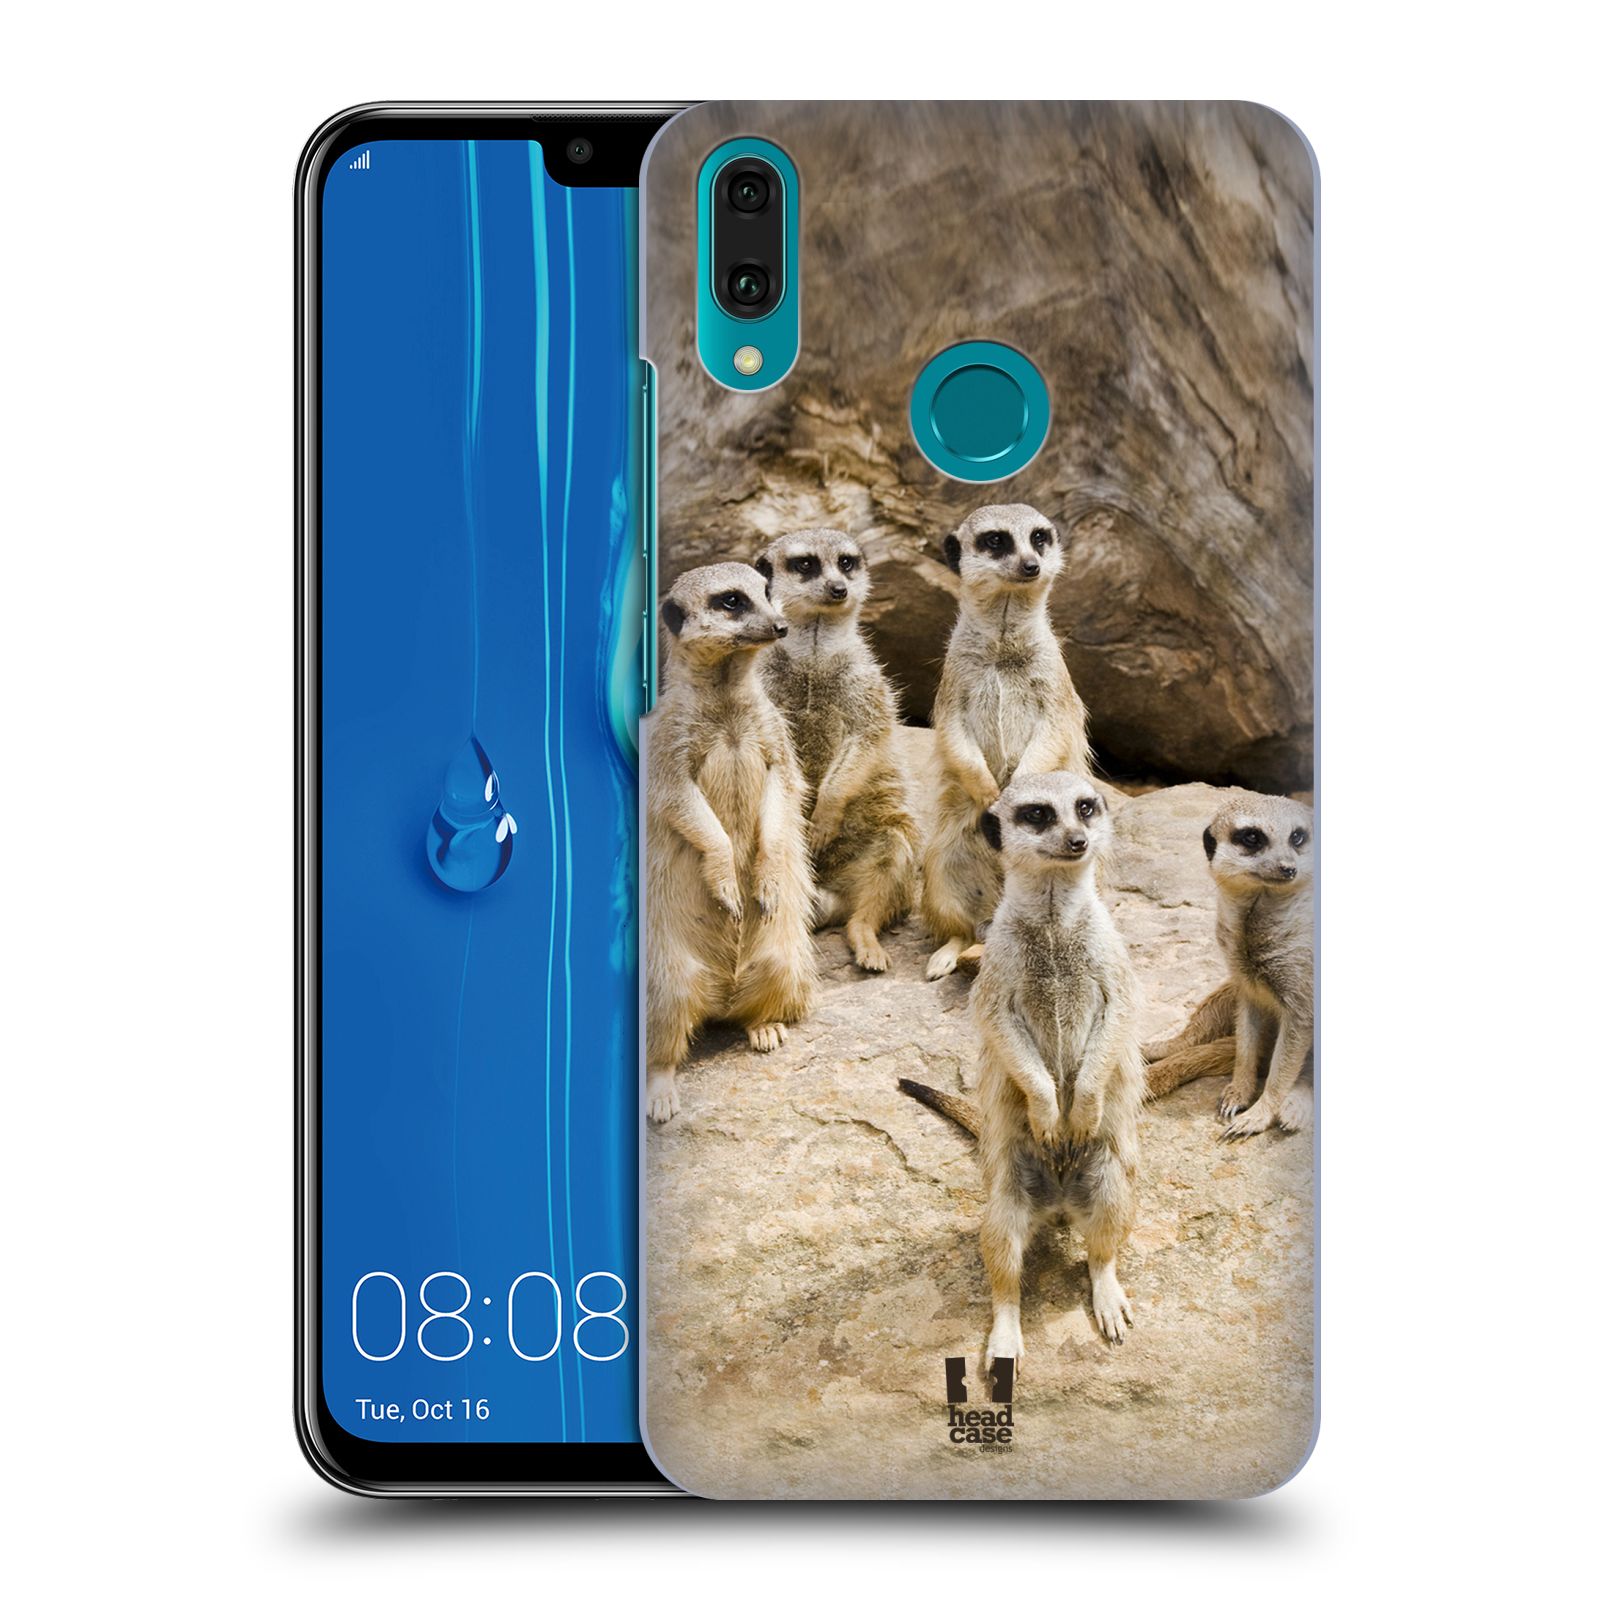 Pouzdro na mobil Huawei Y9 2019 - HEAD CASE - vzor Divočina, Divoký život a zvířata foto SURIKATA